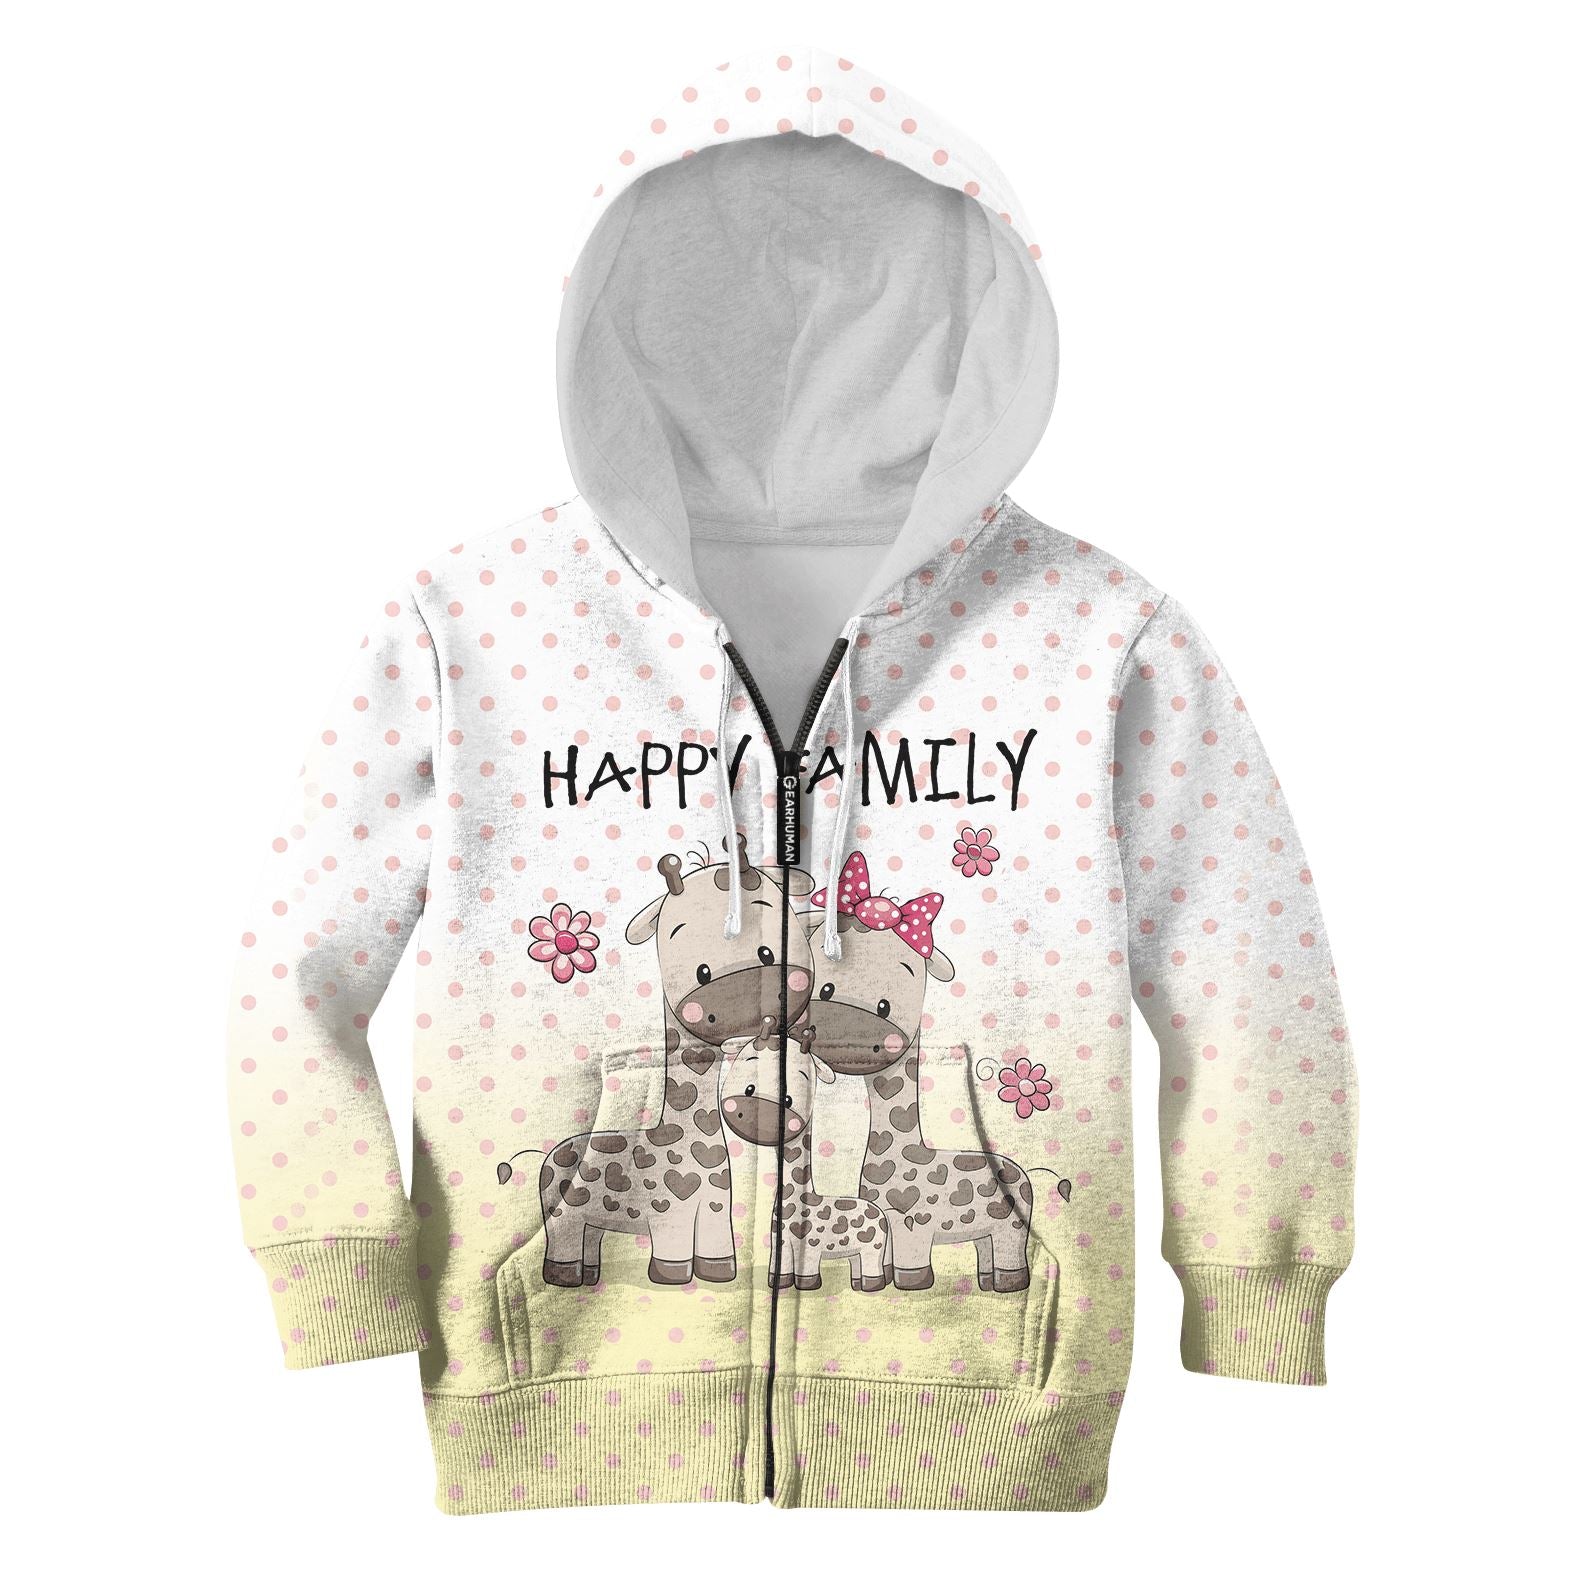 Happy family of giraffe Kid Custom Hoodies T-shirt Apparel HD-PET110342K kid 3D apparel Kid Zip Hoodie S/6-8 